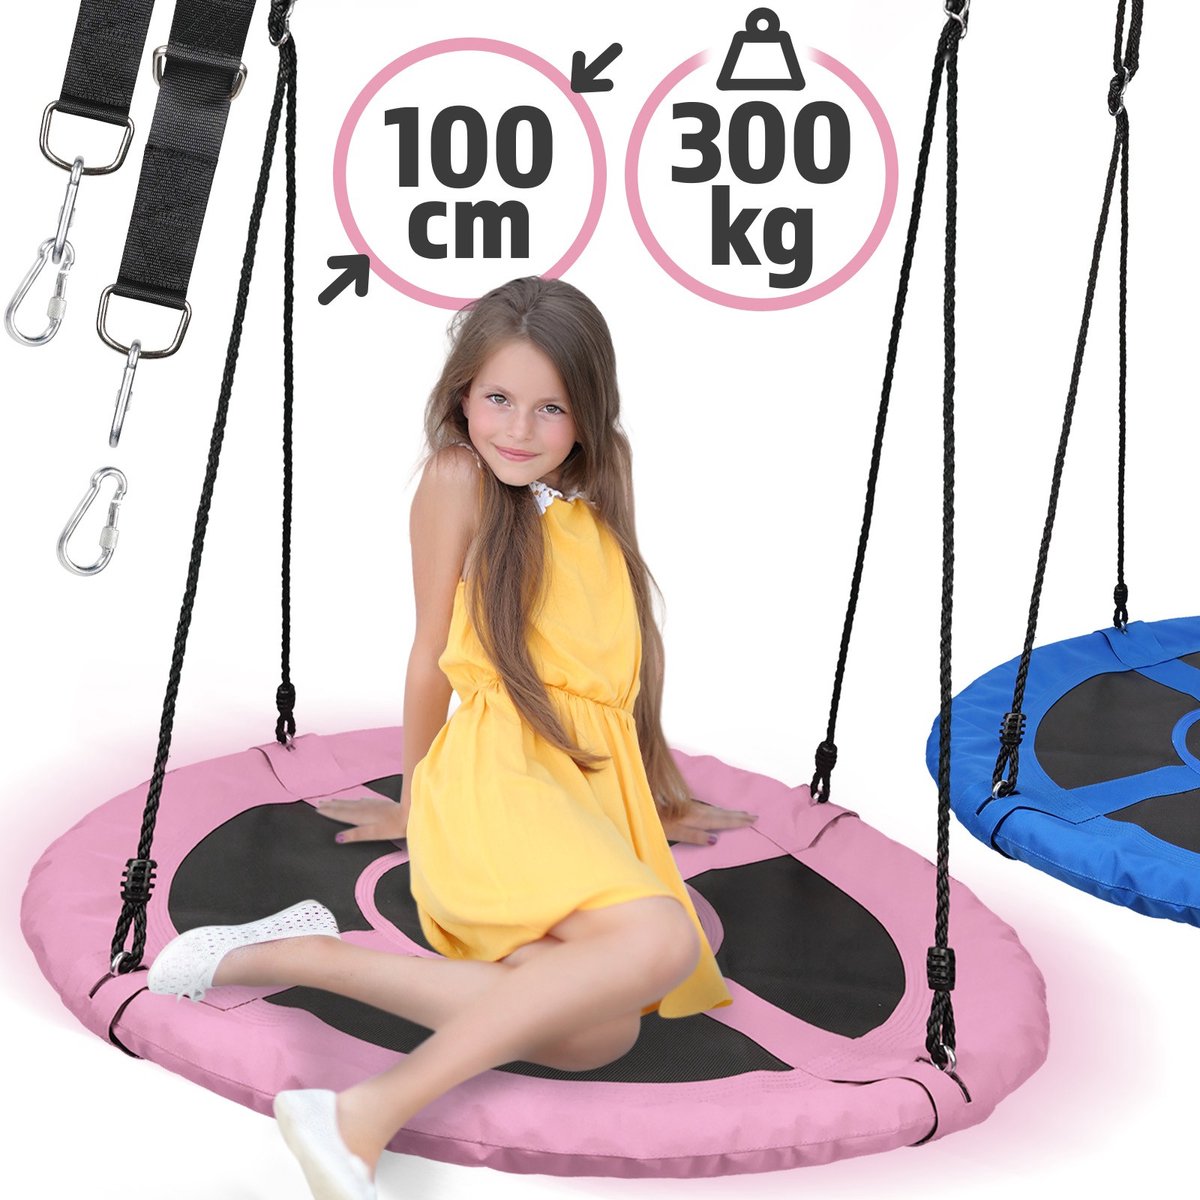 Physionics - Nestschommel voor Buiten/Binnen - Maximale Belasting 300kg - Diameter 100cm - Ronde schommel - Bordschommel - Tuinschommel - Hangschommel - Schommel voor meerdere kinderen - Roze